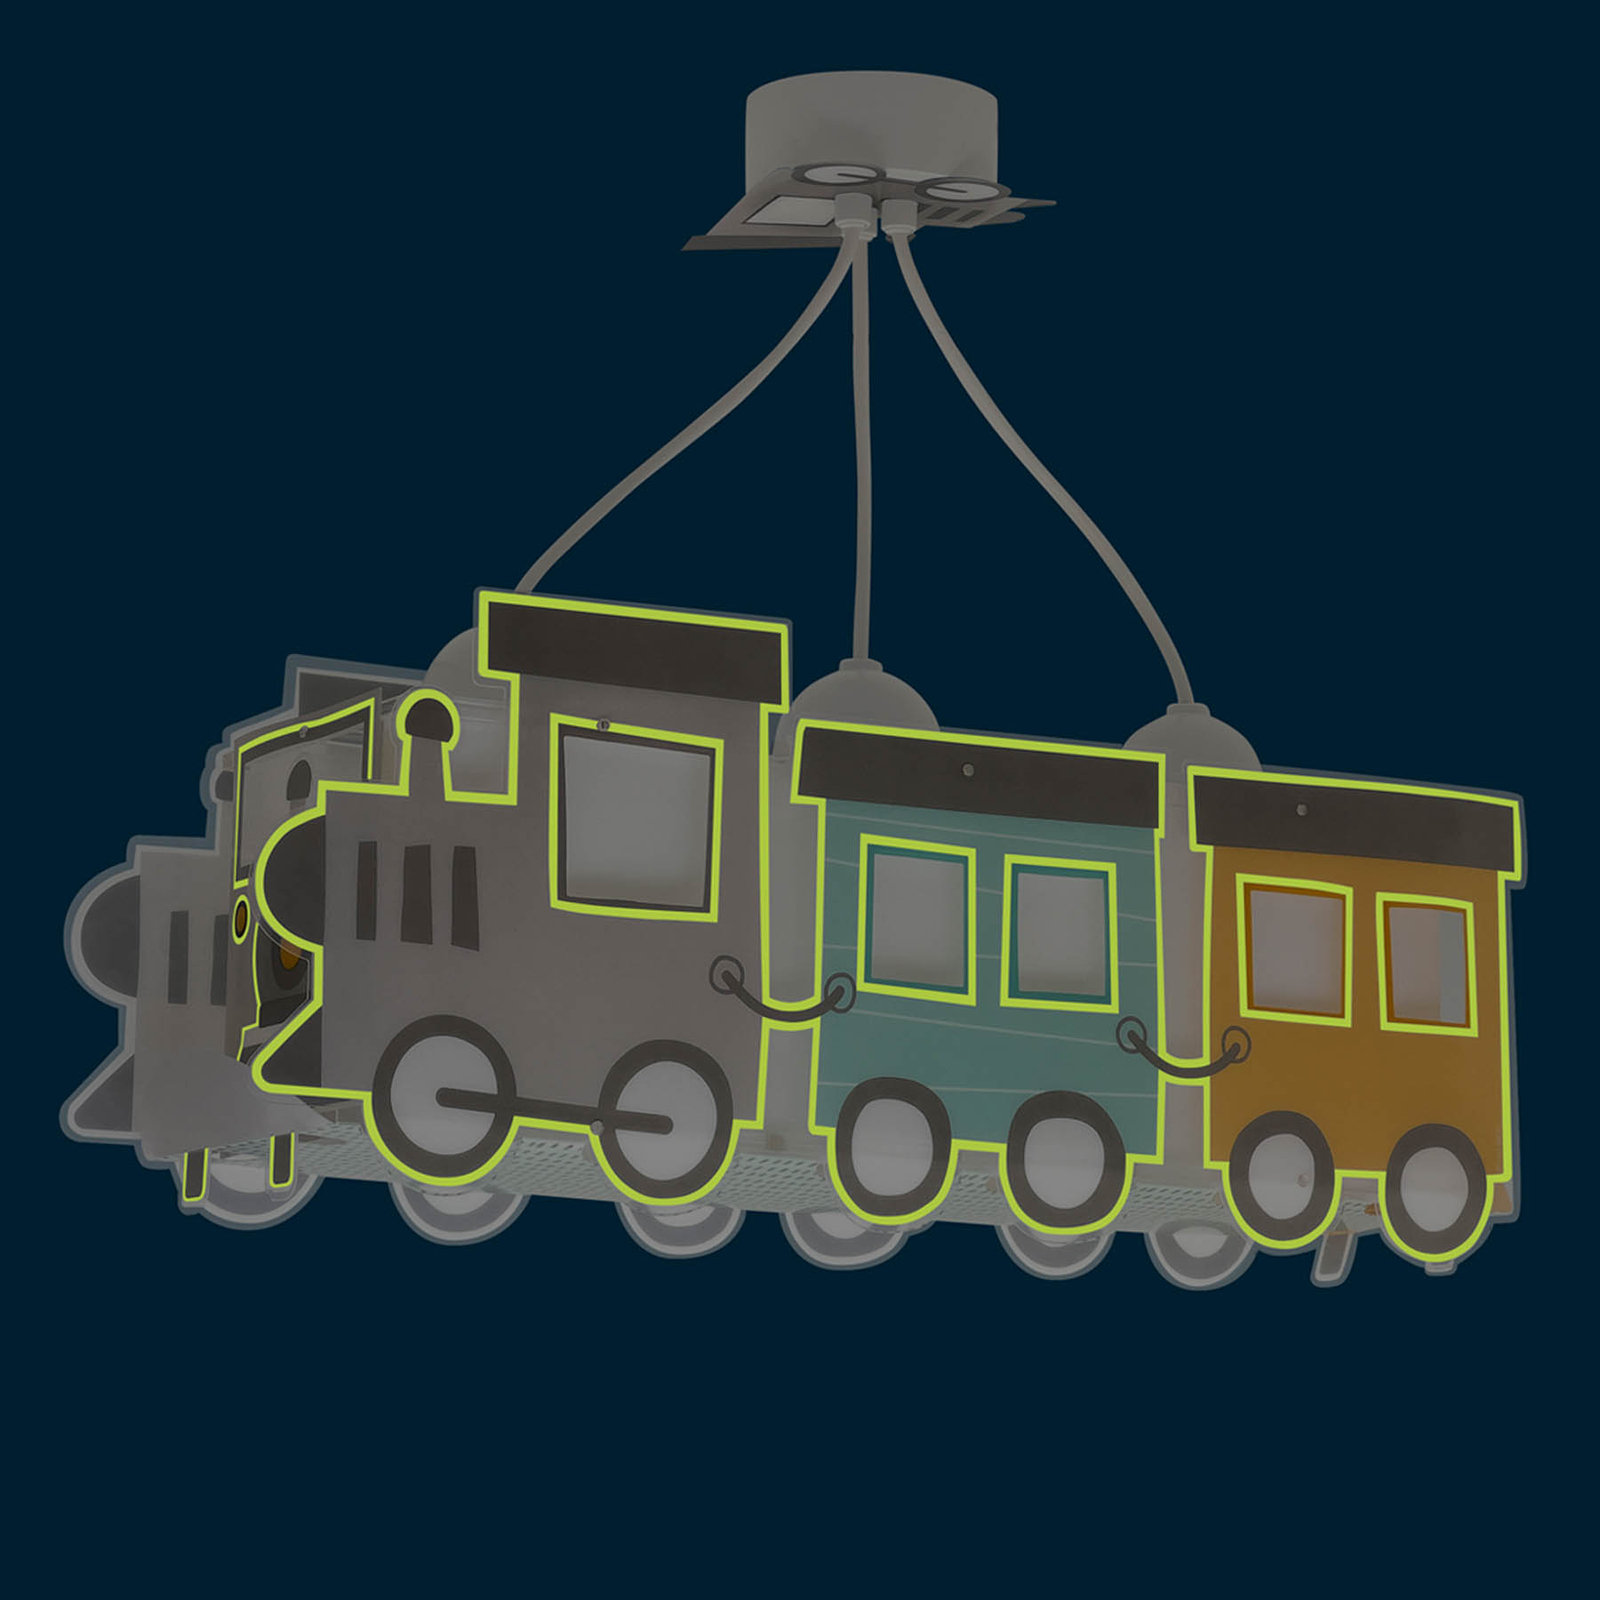 Dalber Night Train Hängelampe als Lokomotive